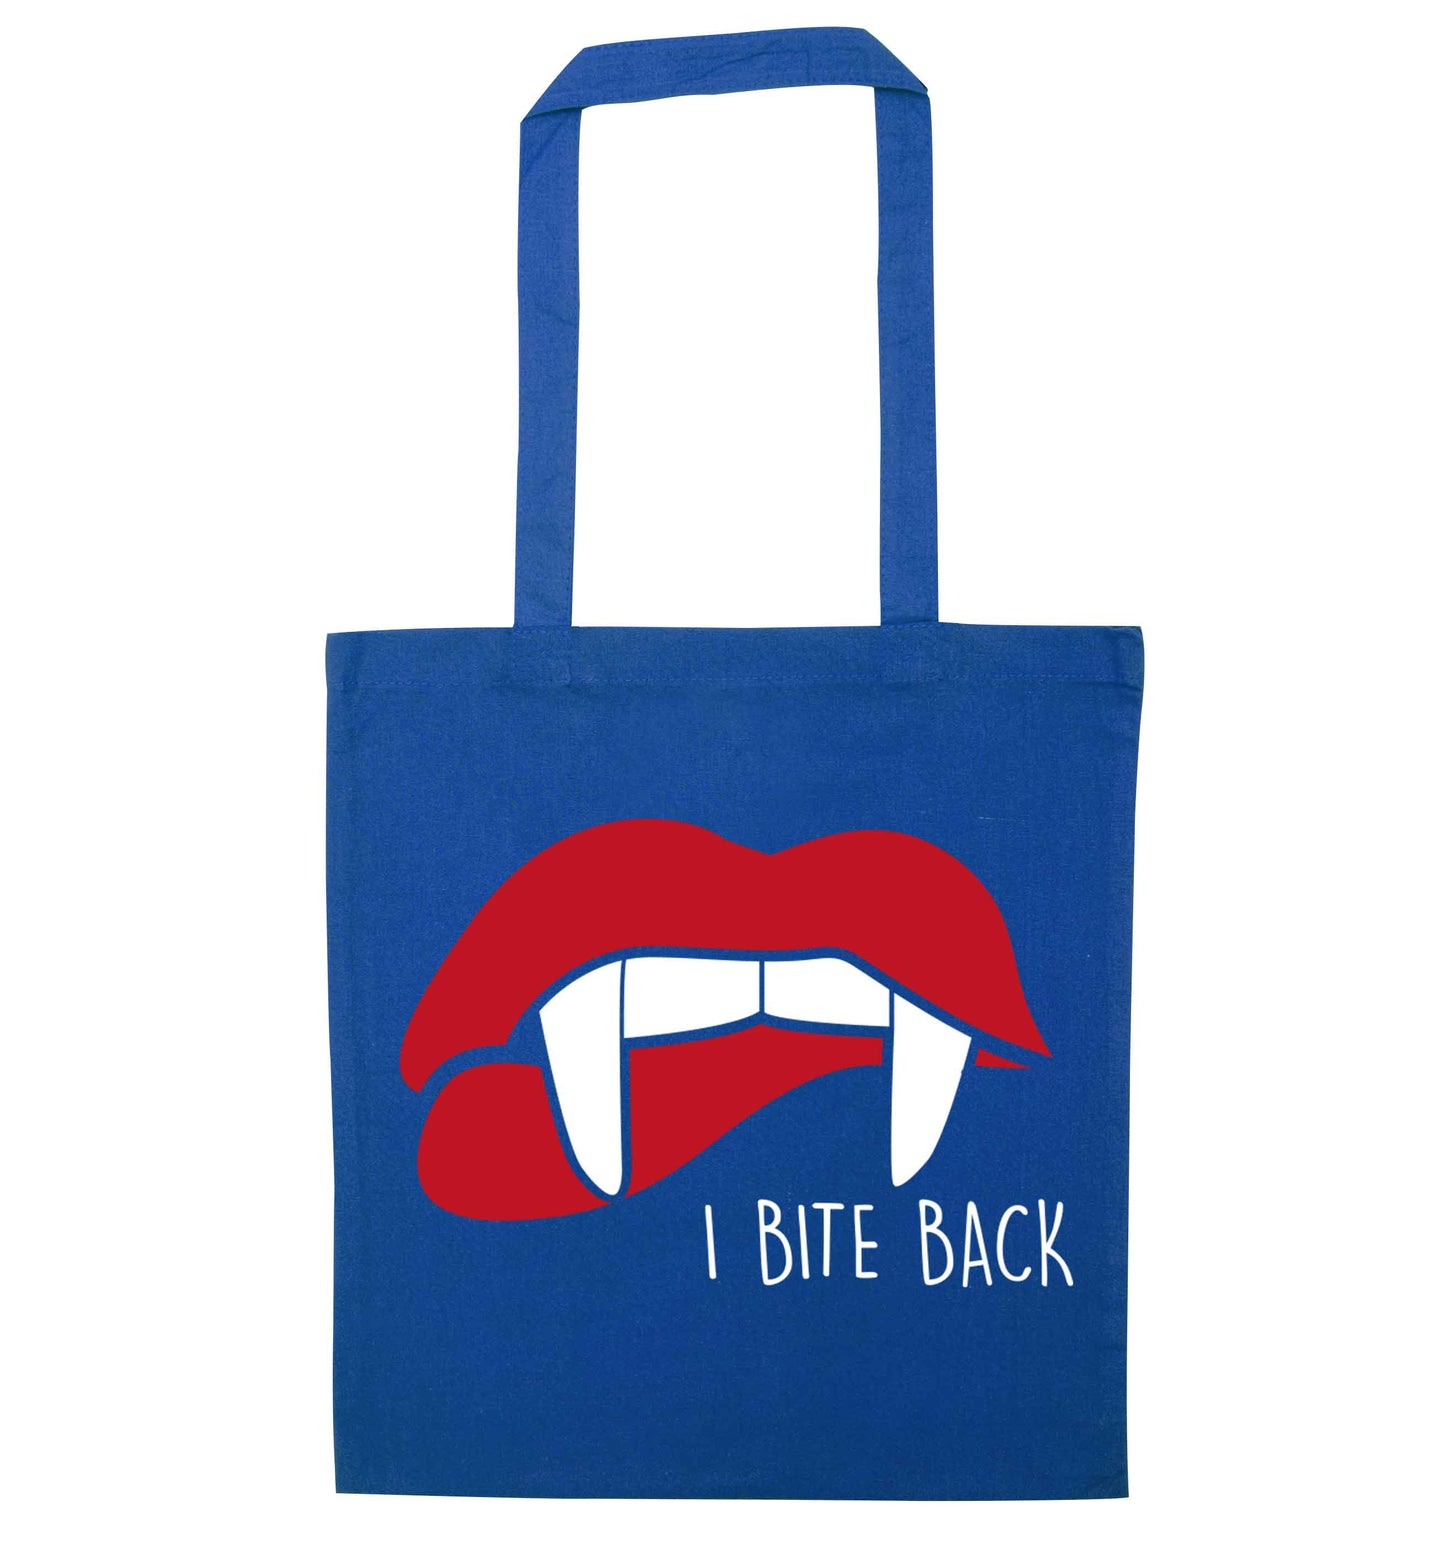 I bite back blue tote bag